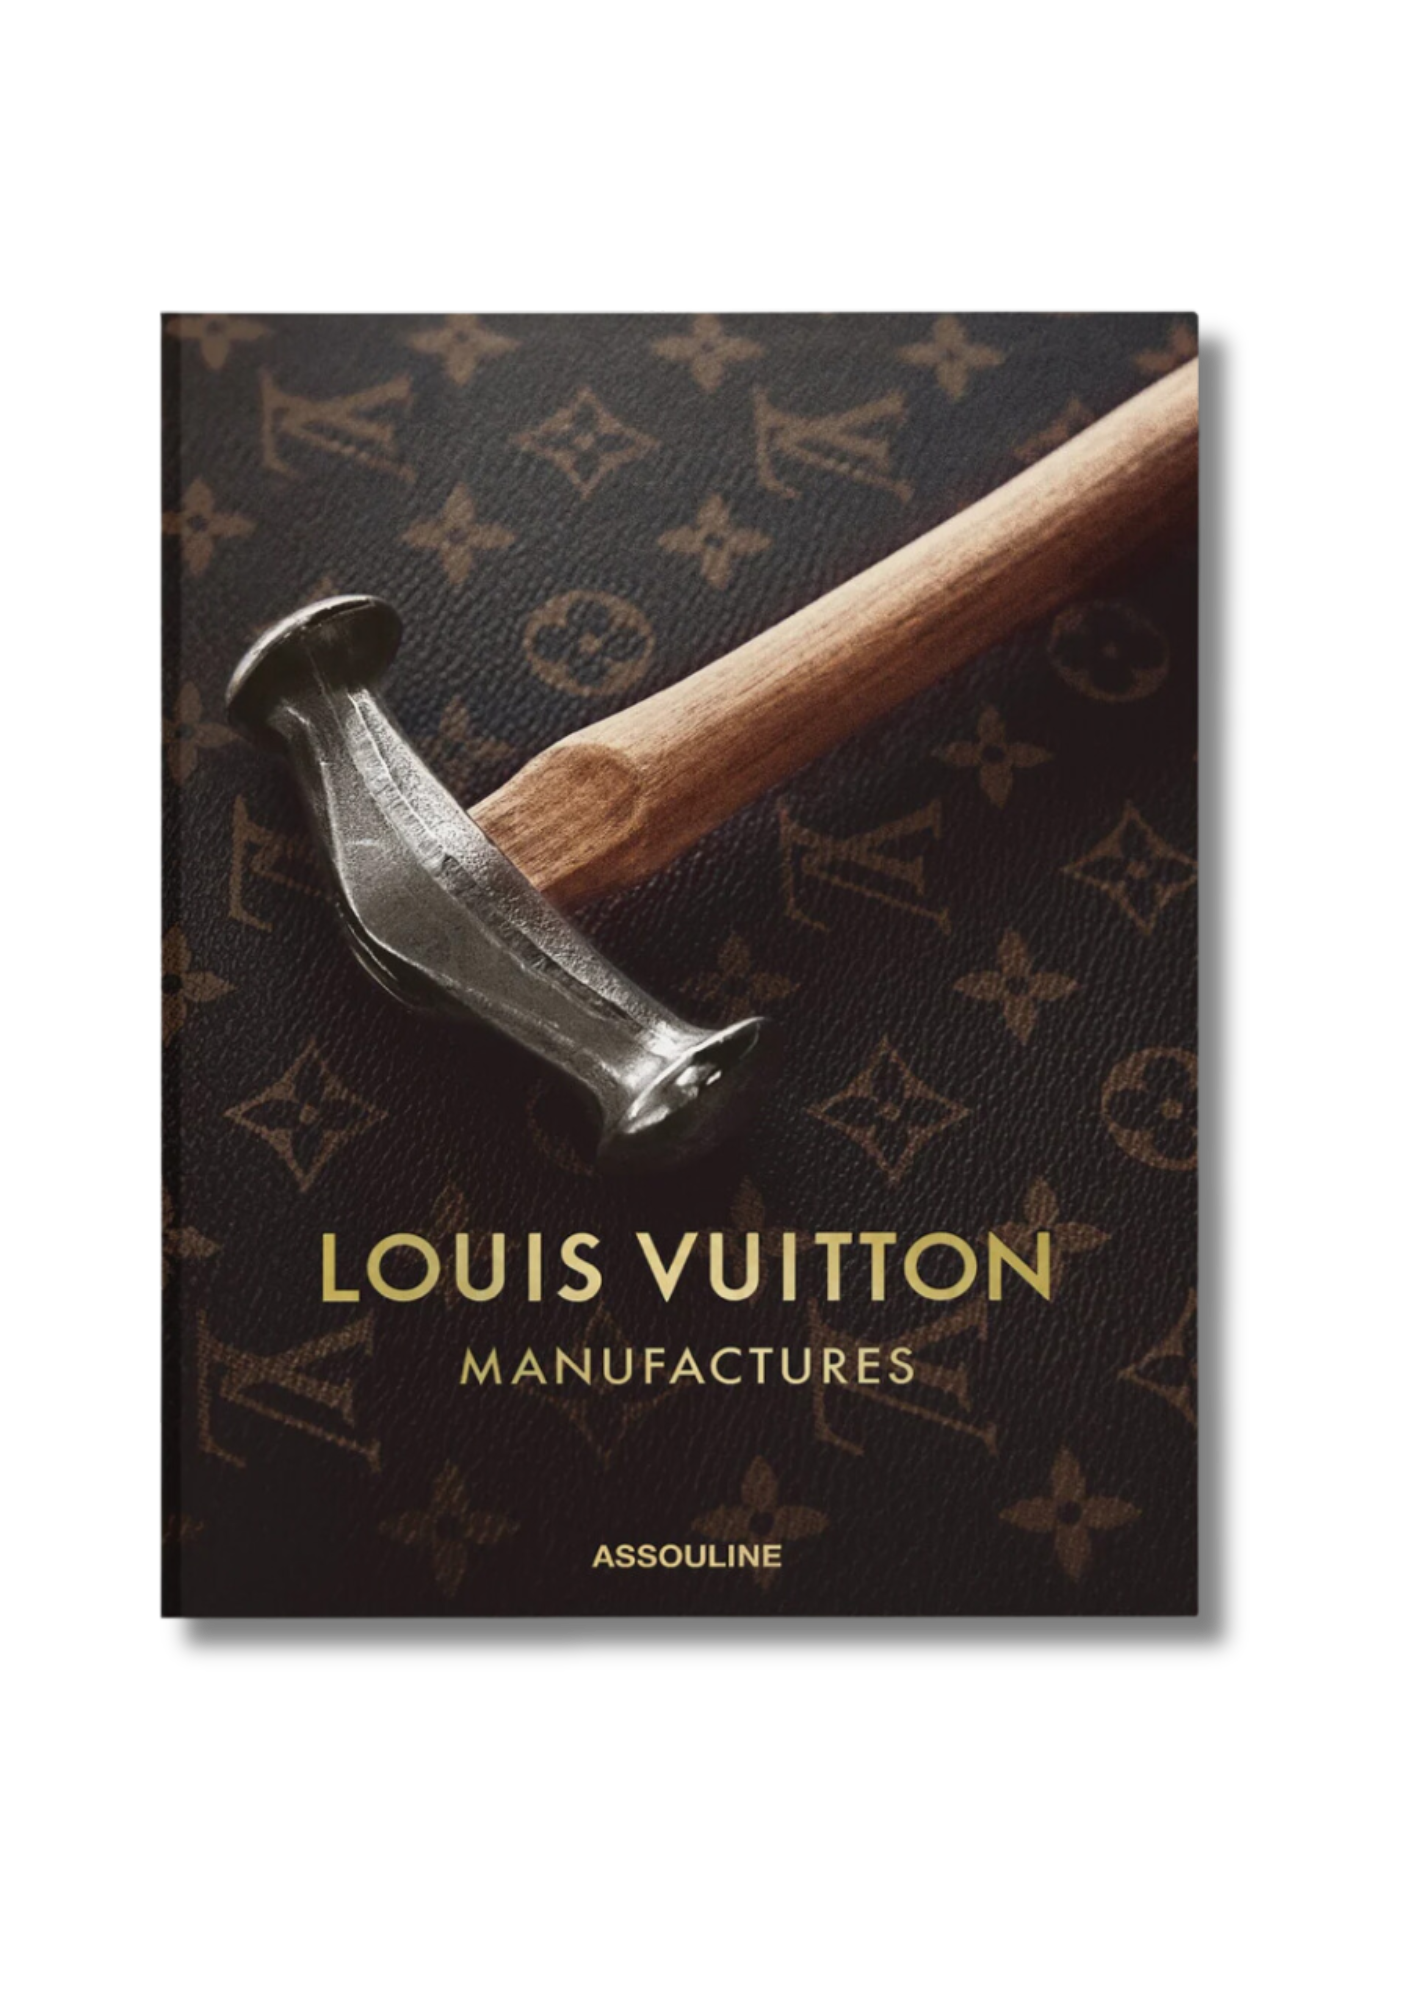 Louis Vuitton: Manufactures